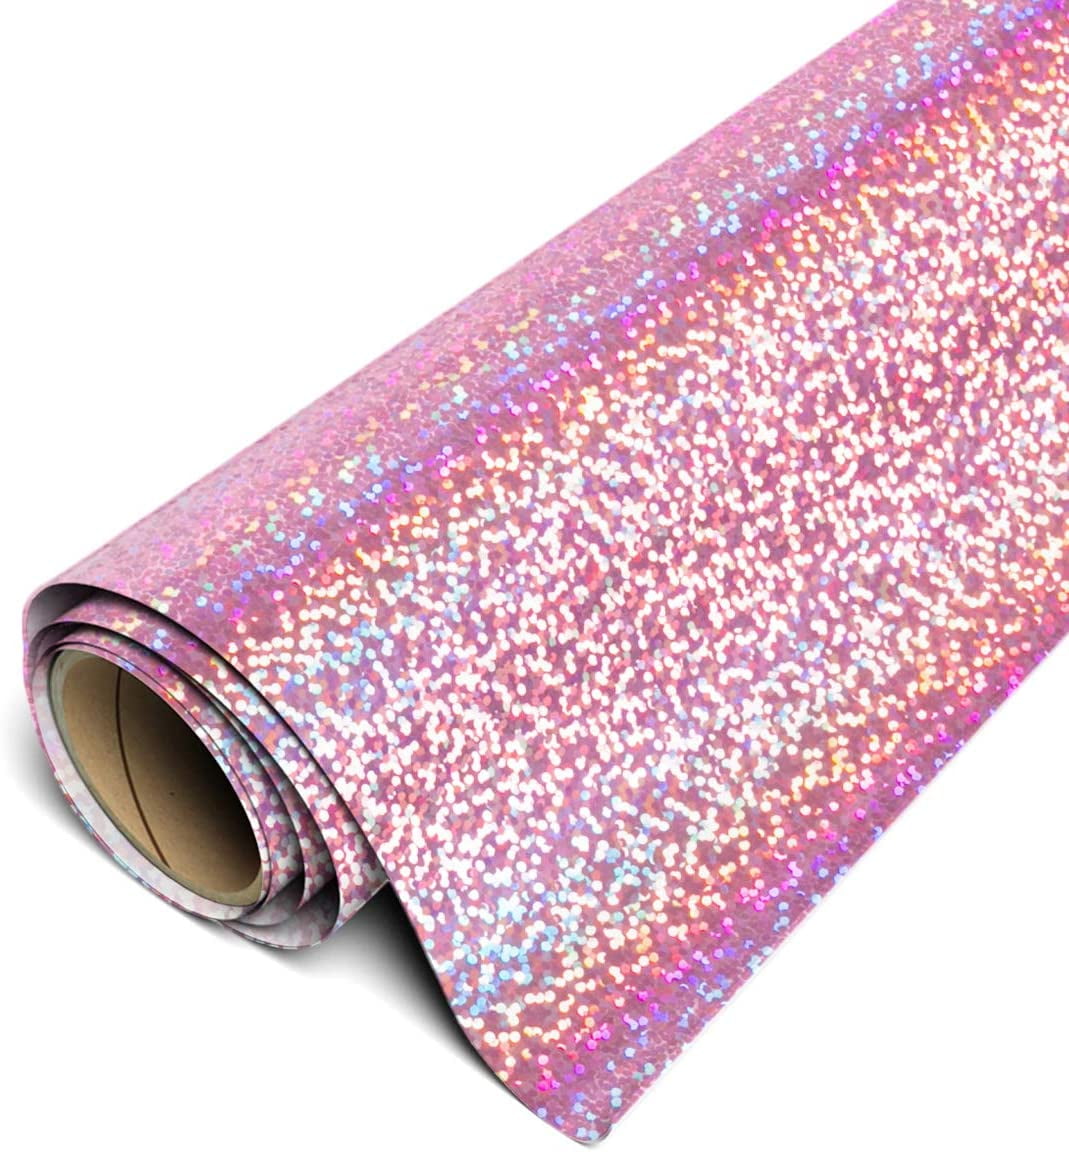 Siser Glitter HTV Iron On Heat Transfer Vinyl 20 x 20ft Roll - Hot Pink 